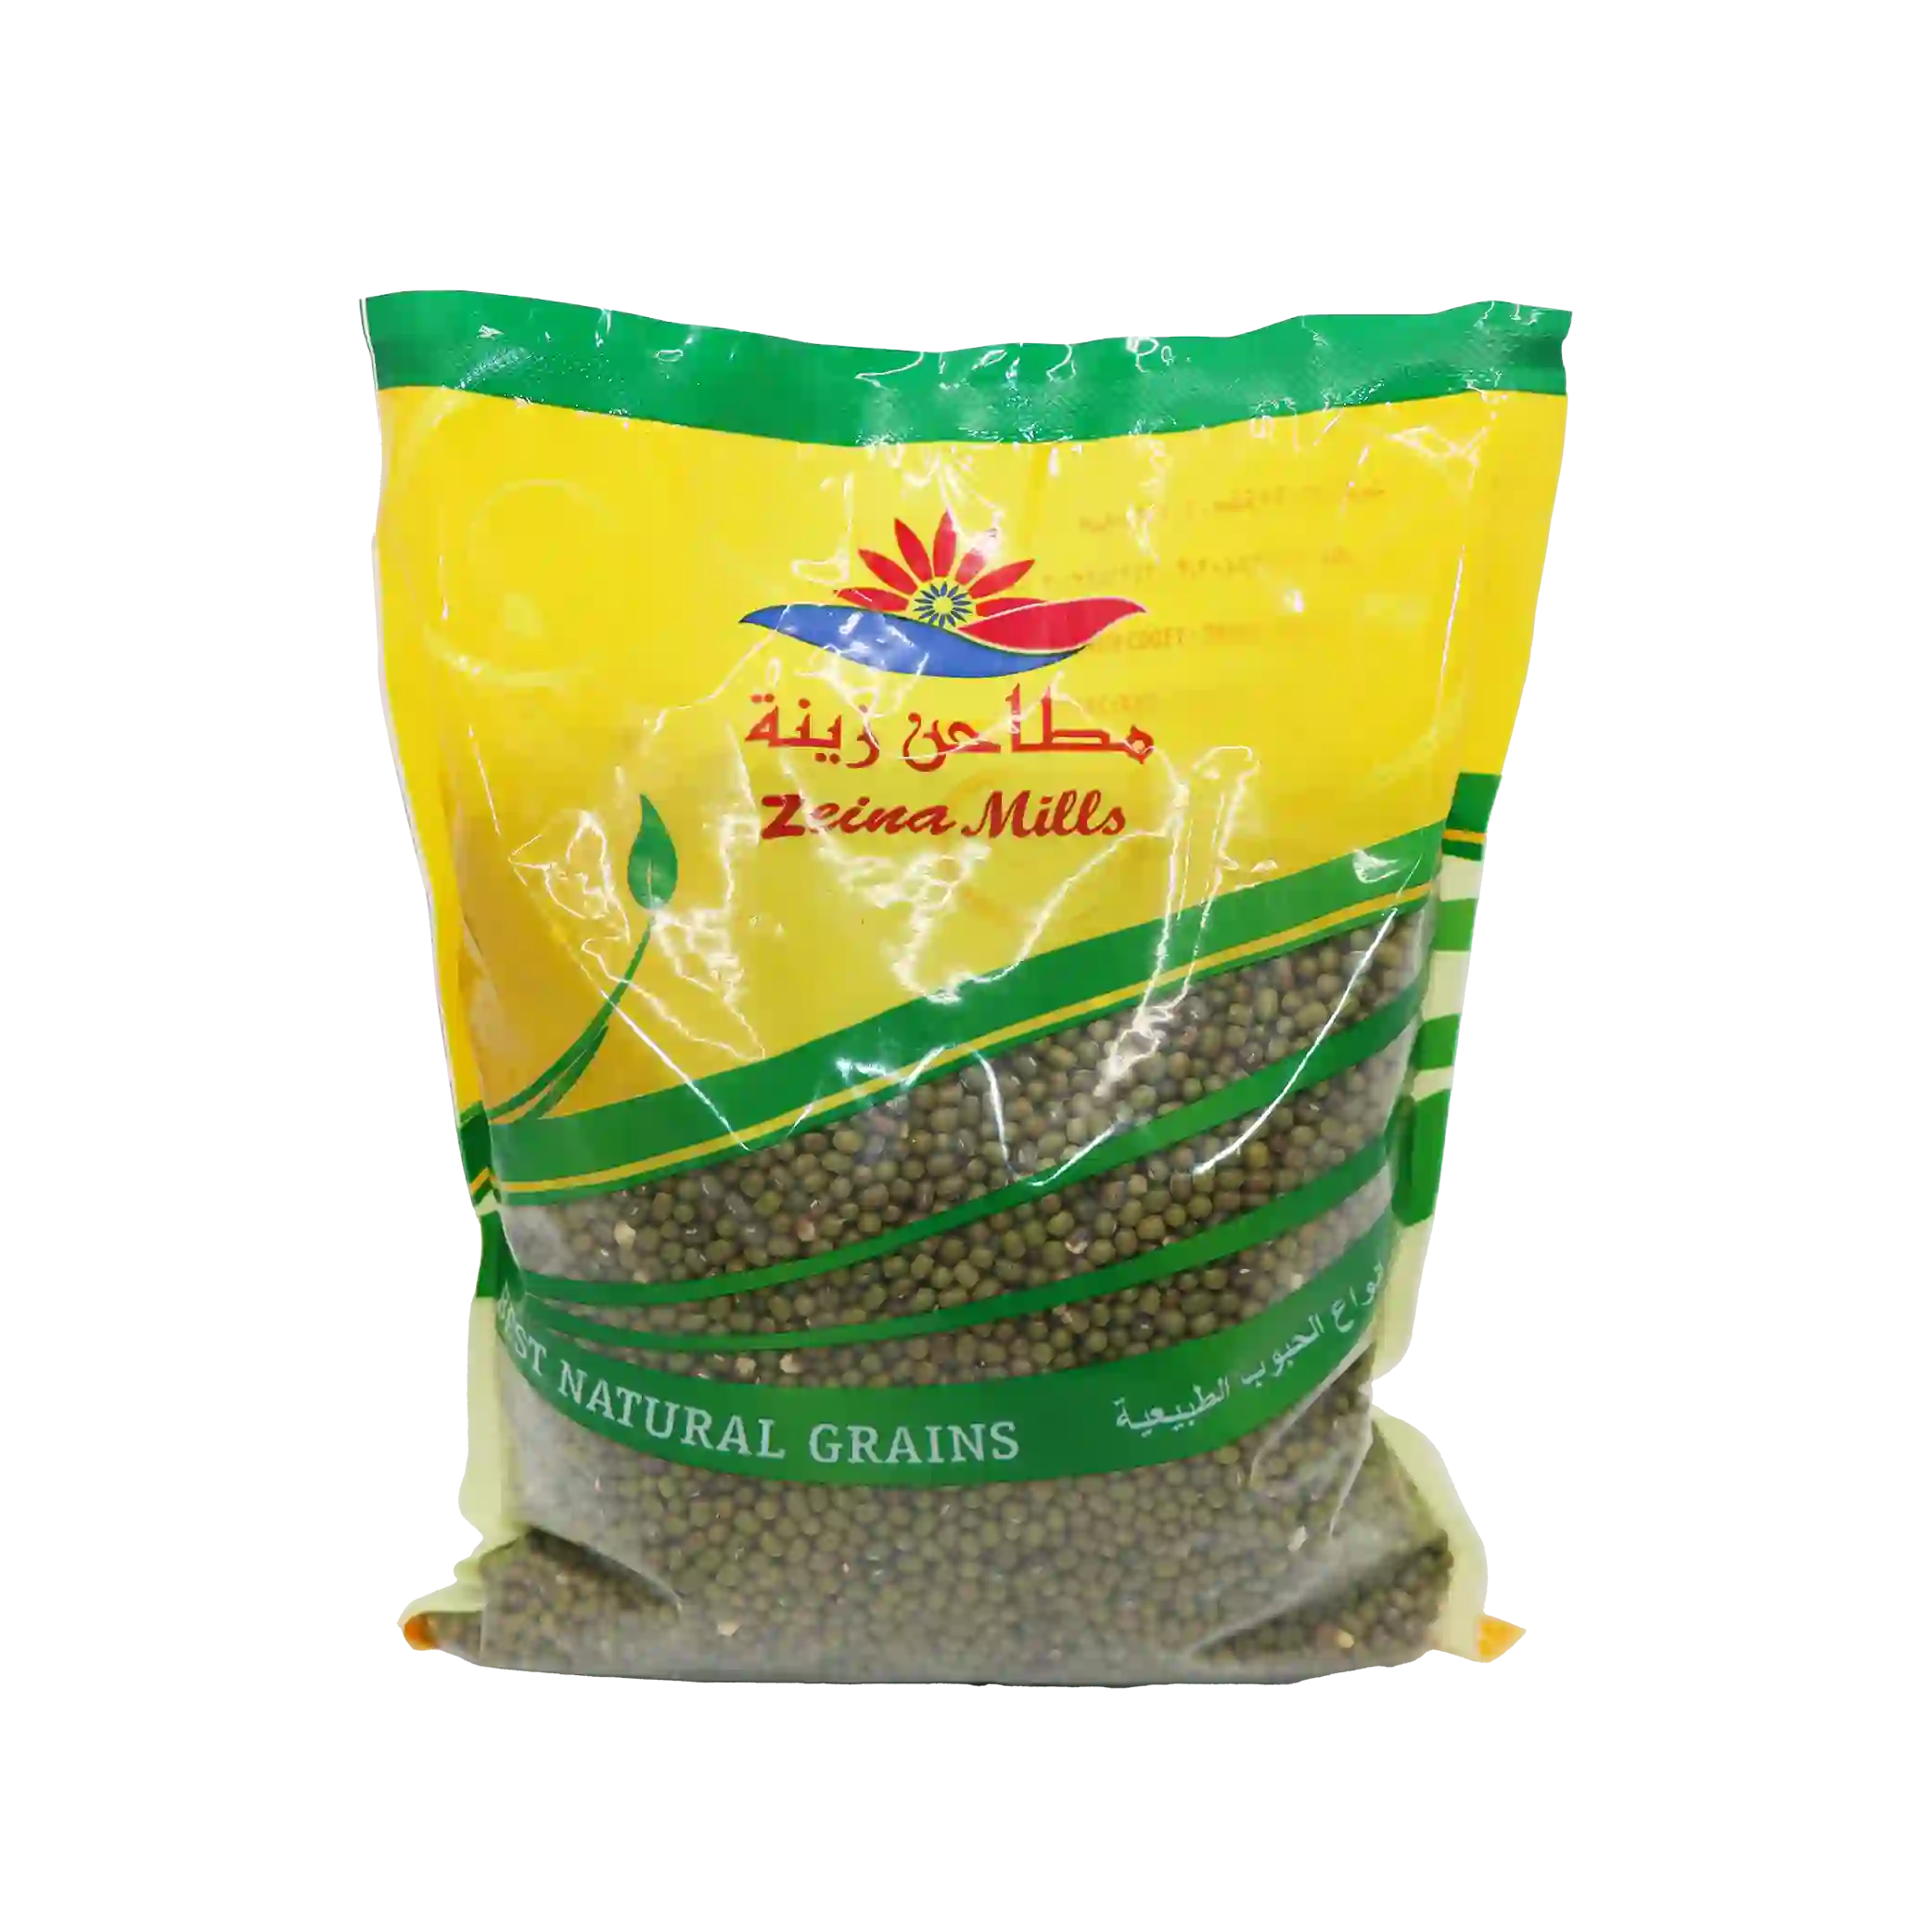 KAC -Green mung beans - 1 kilo